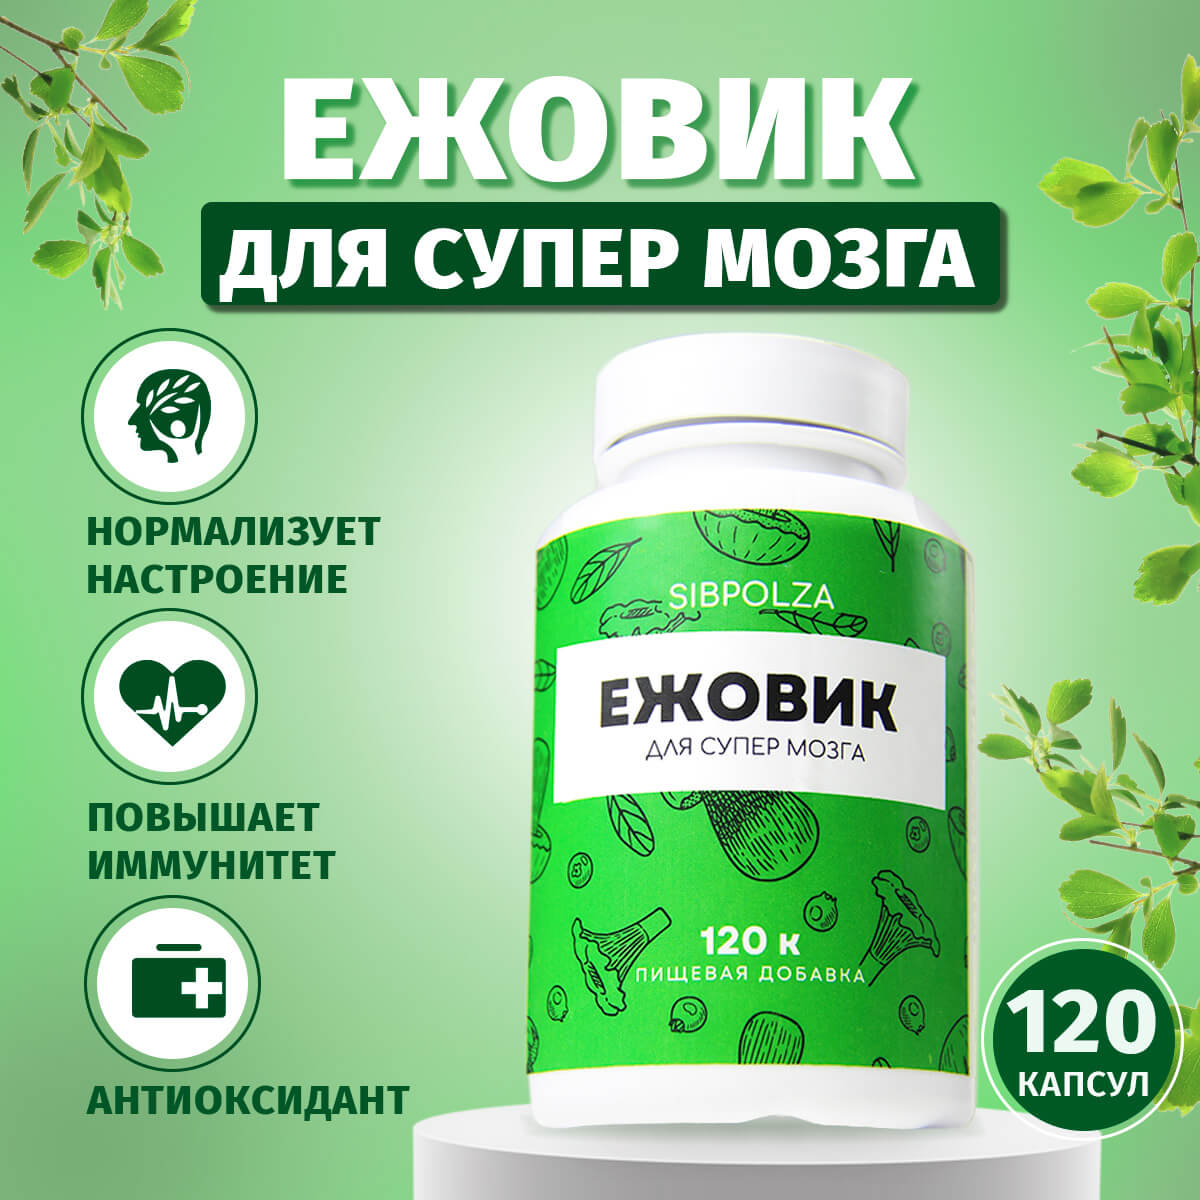 Ежовик для супермозга, пищевая добавка Sibpolza , 120 капсул, СИБИОПРО